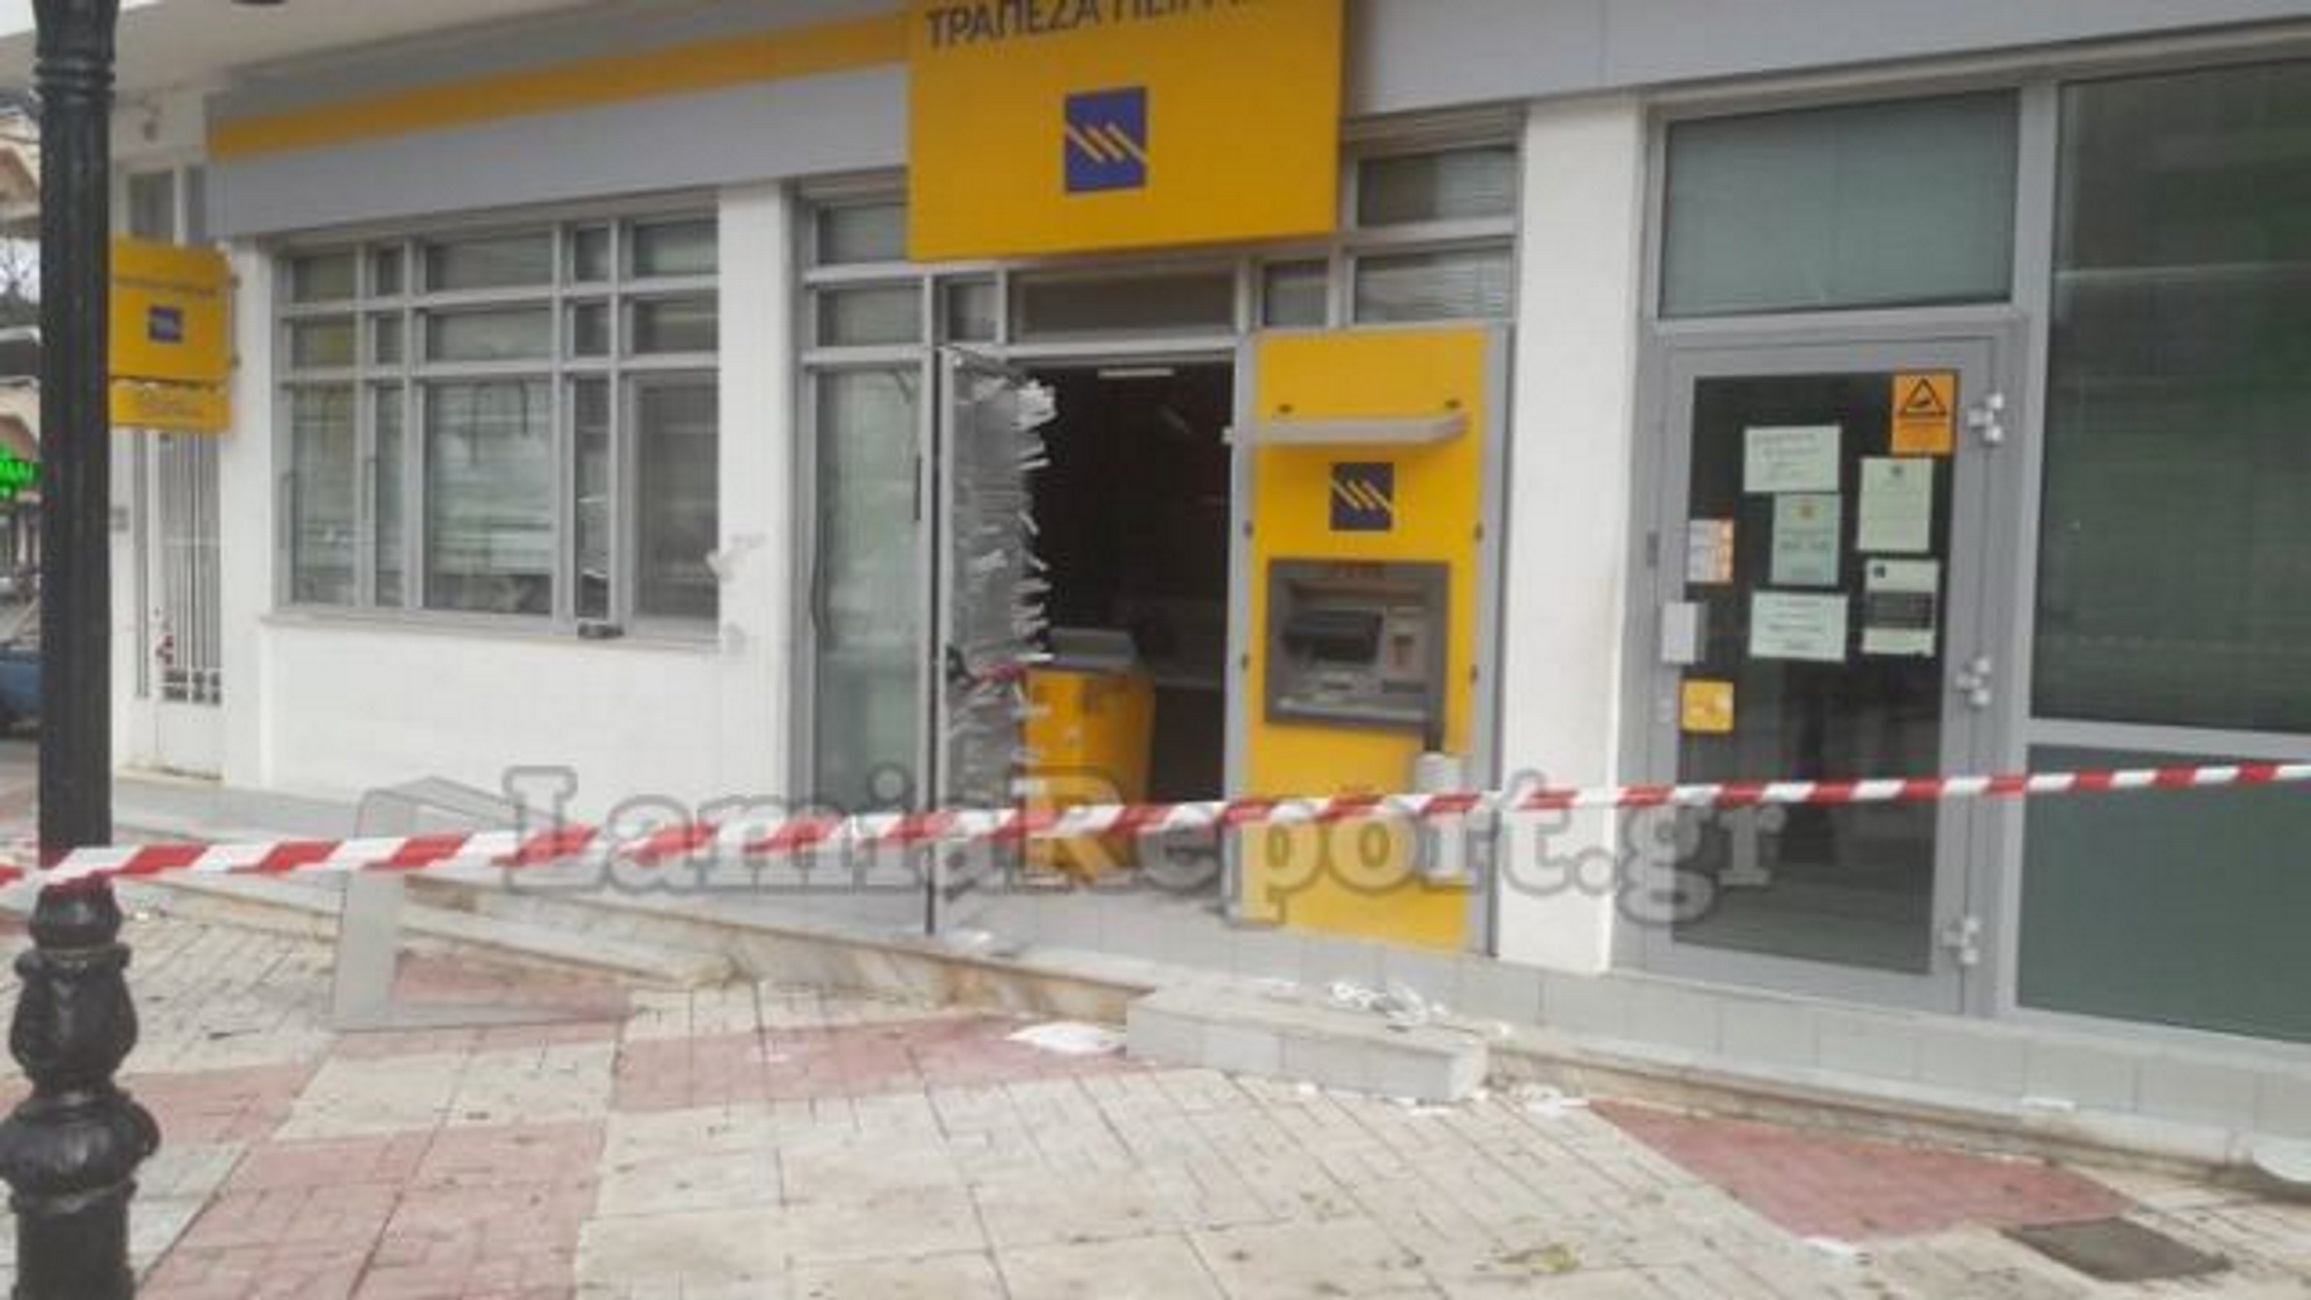 Εύβοια: Μπήκαν στην τράπεζα και ανατίναξαν το χρηματοκιβώτιο! Χρυσό χτύπημα στο Μαντούδι (Φωτό)